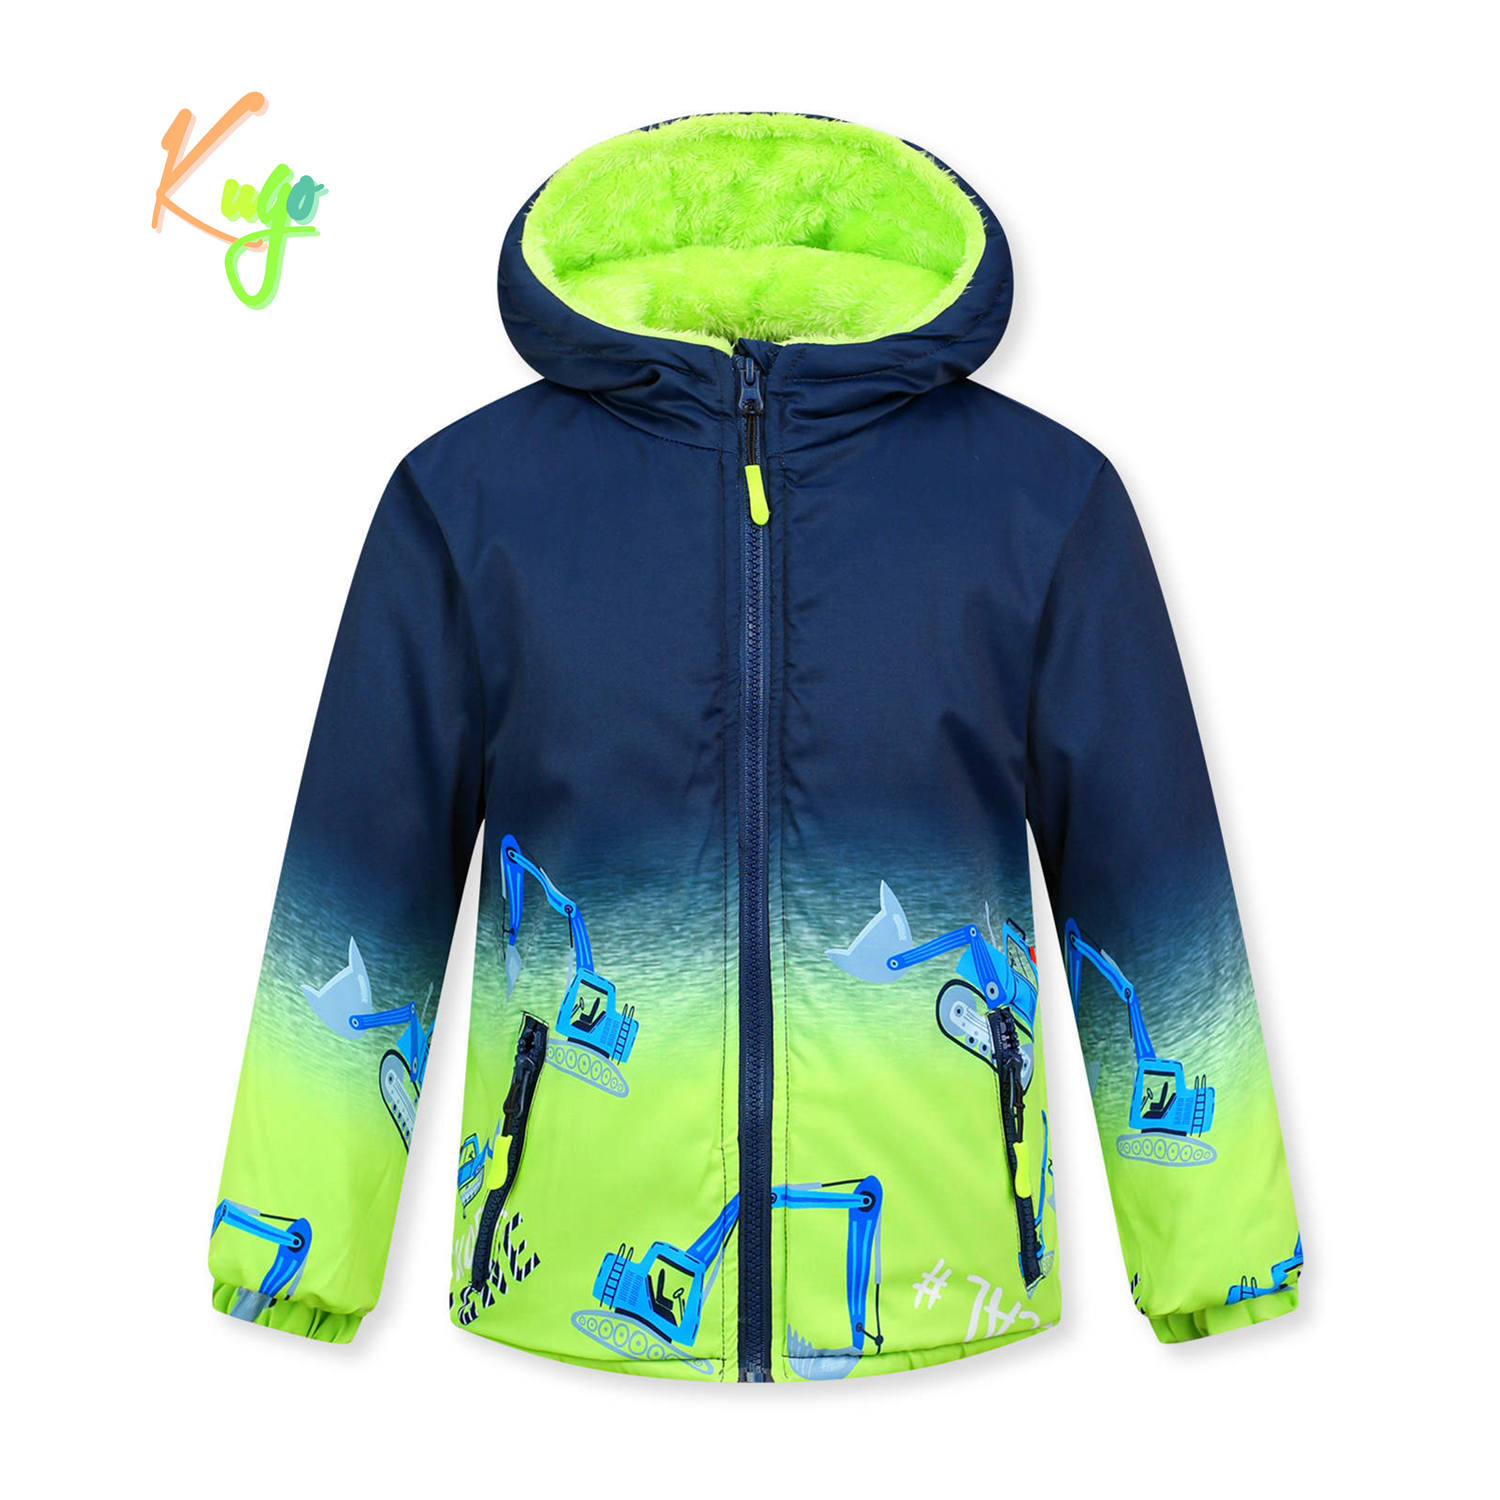 Chlapecká zimní bunda - KUGO FB0320, tmavě modrá / signální Barva: Modrá tmavě, Velikost: 98